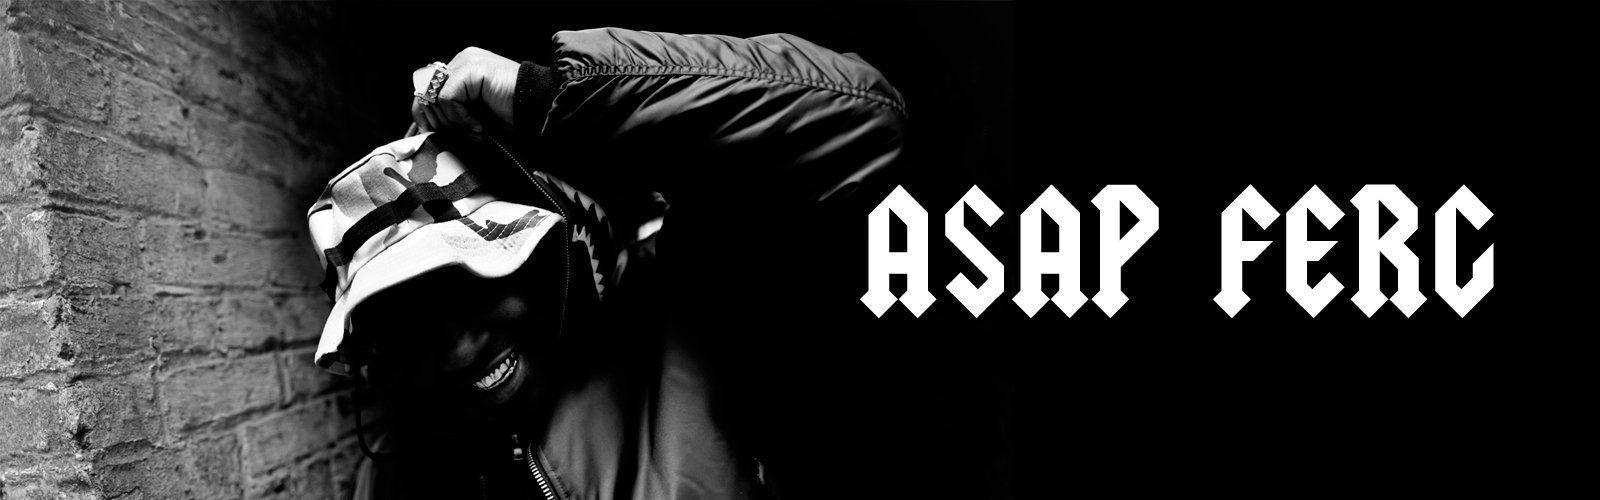 ASAP Mob Logo - ASAP Ferg. A$AP Ferg